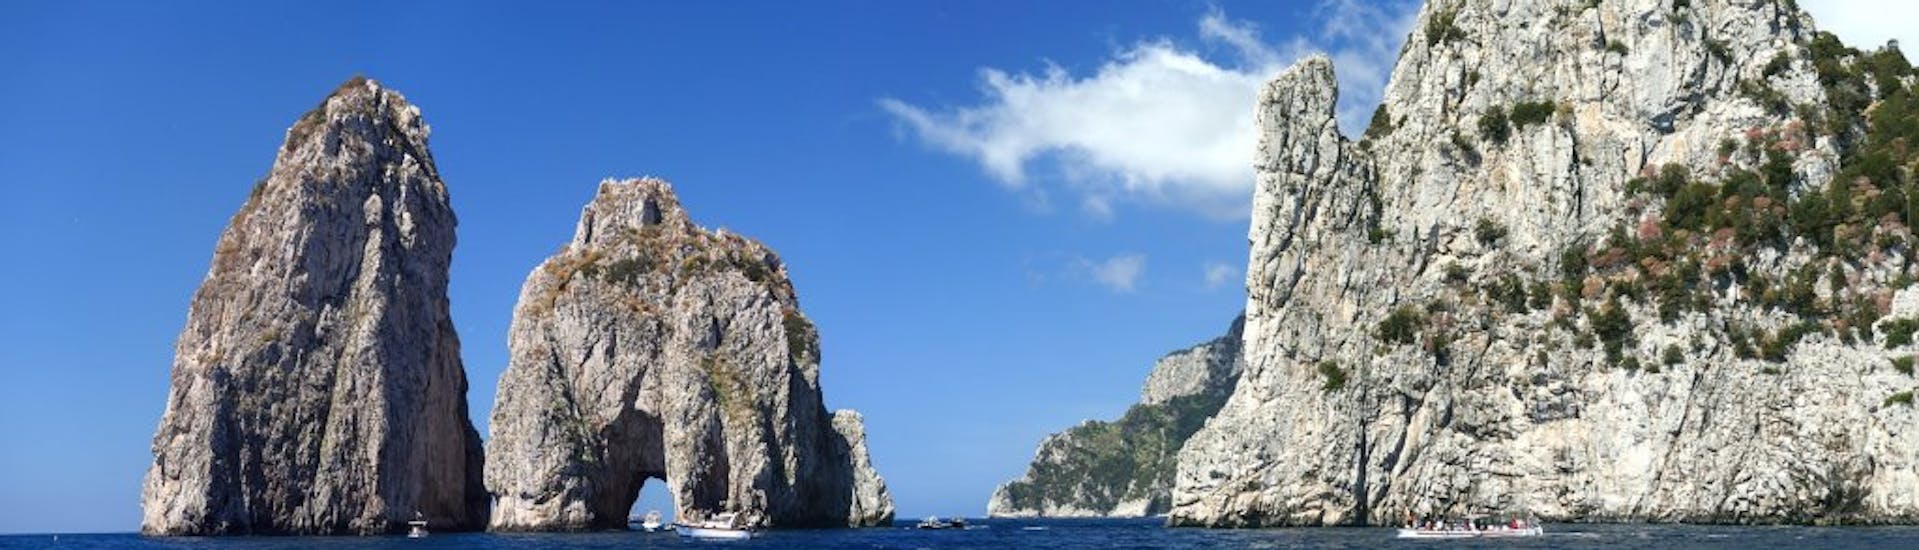 Die Faraglioni während der Bootstour rund um Capri mit Aufenthalt auf der Insel.